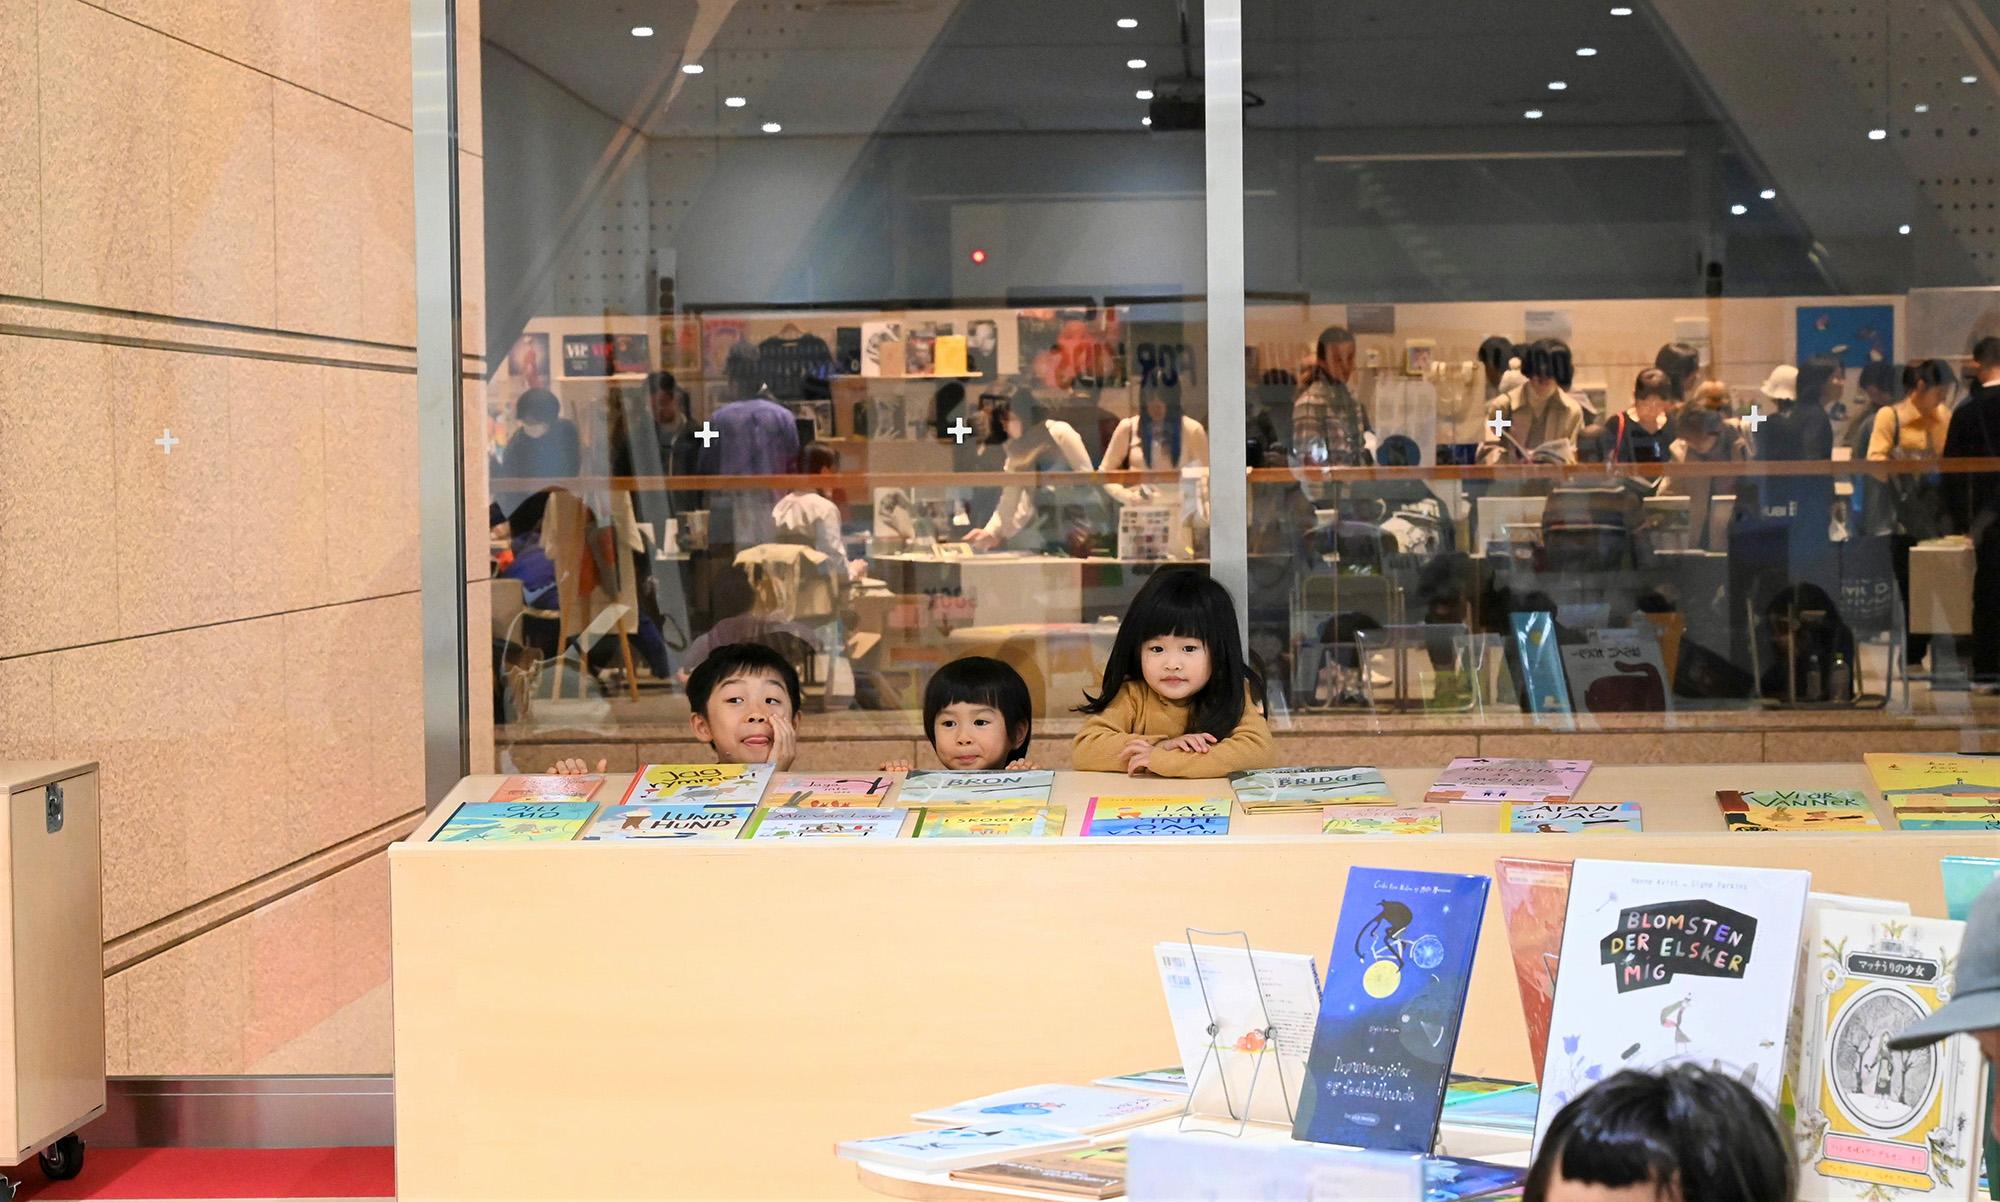 Children from Tokyo playing around bookshelves.